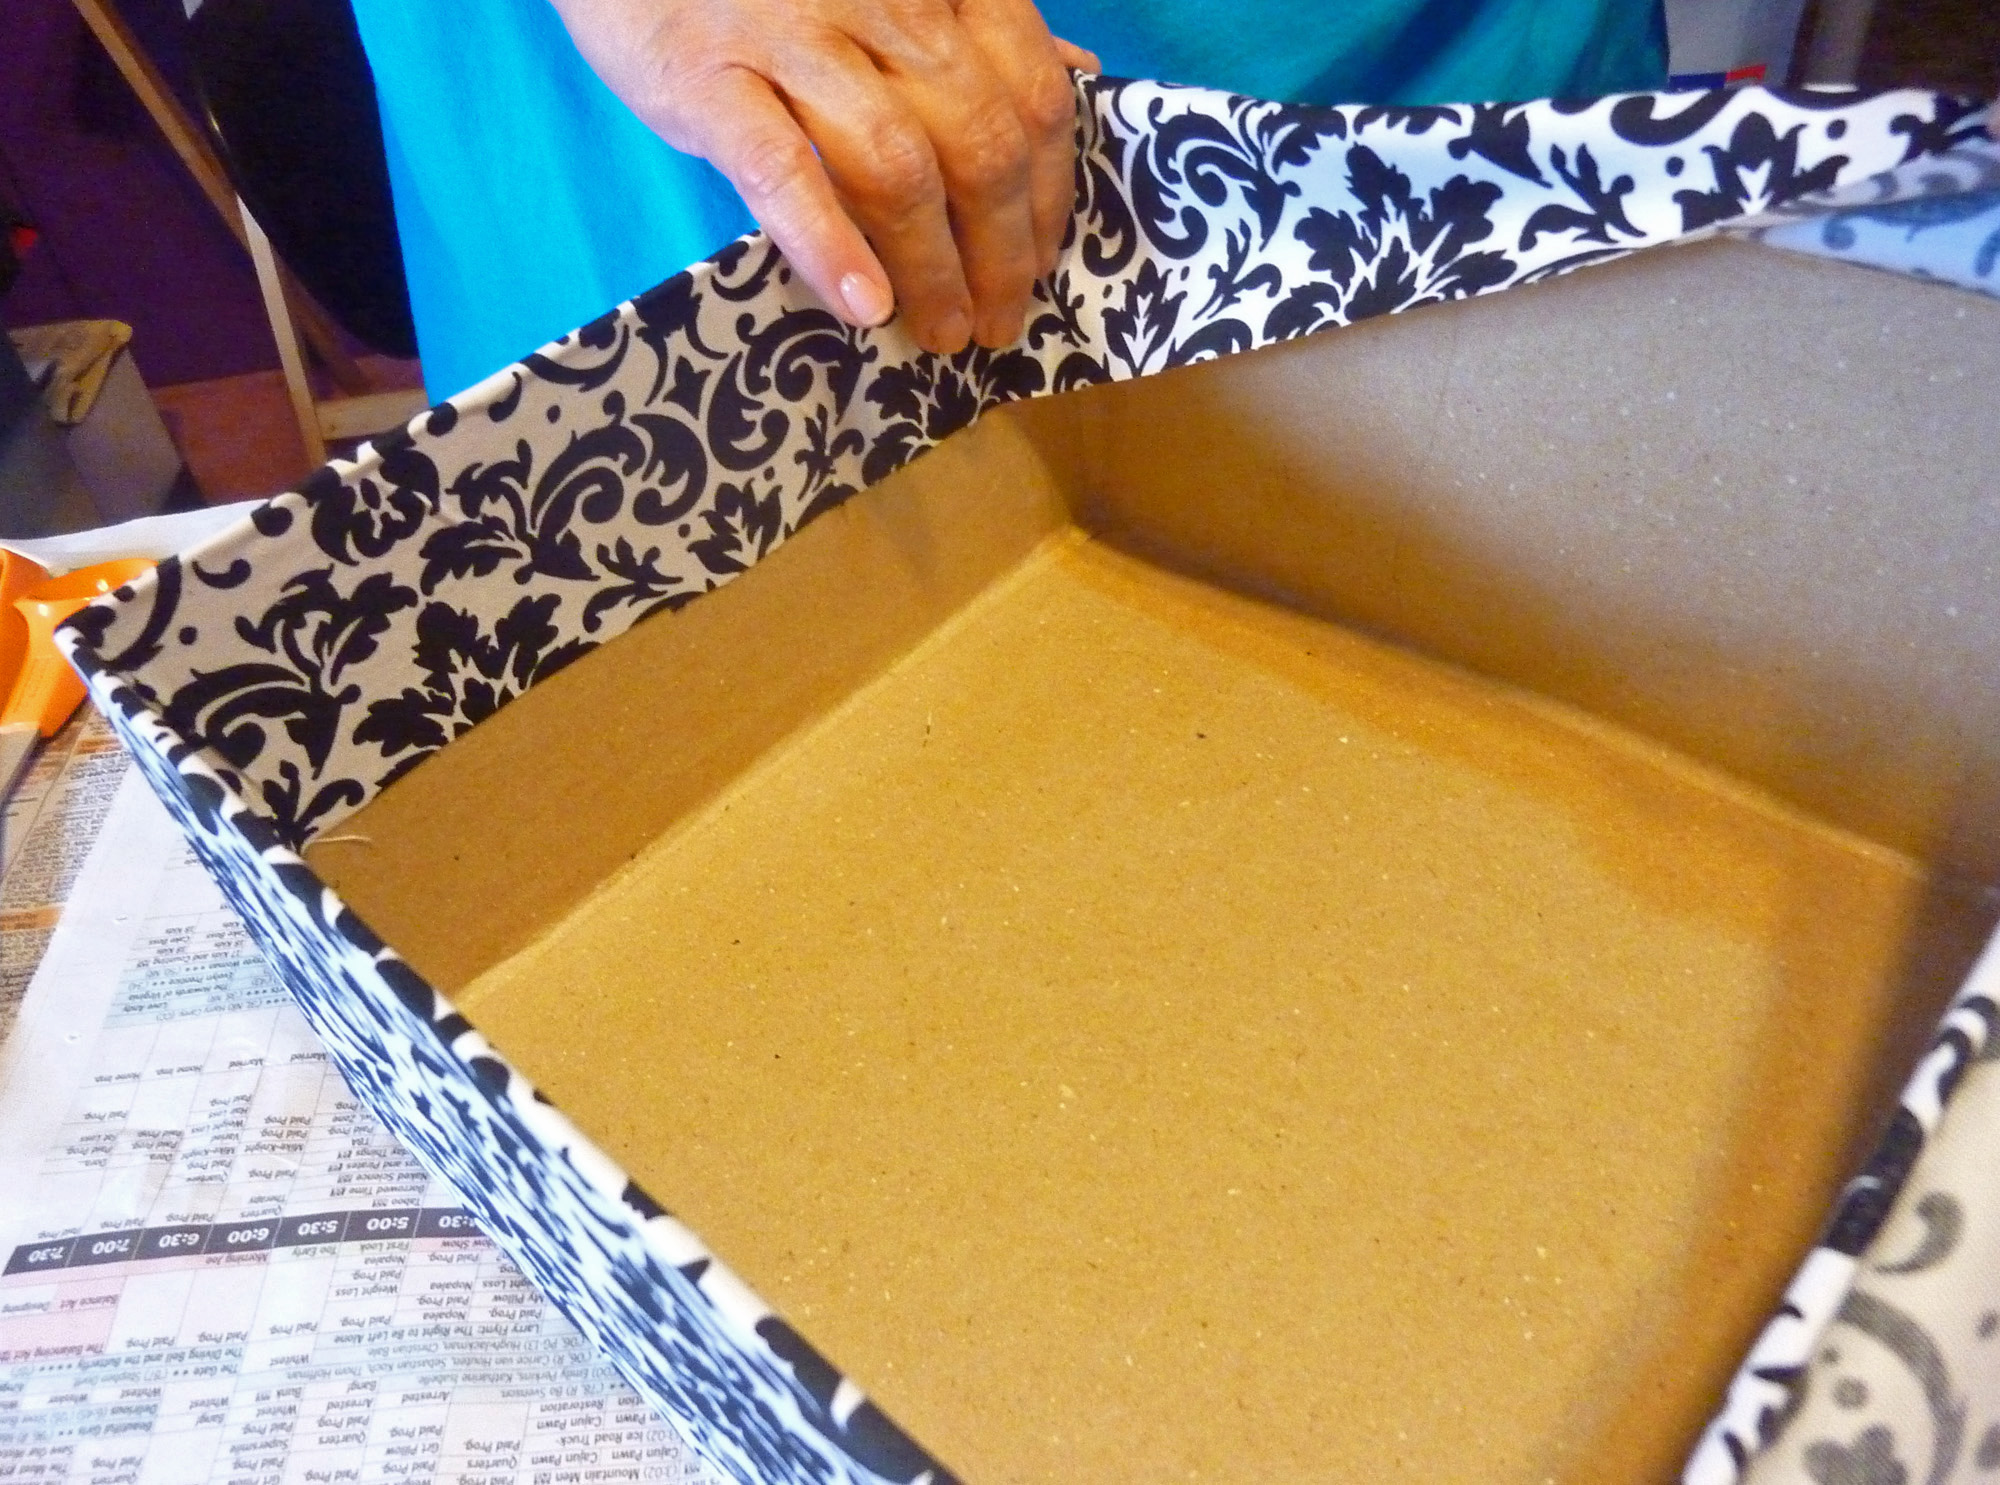 Обтянуть коробку. Обклеить коробки ьумагой. Обклеить картонную коробку. Обклеить коробку для подарка. Обклеить коробку бумагой.